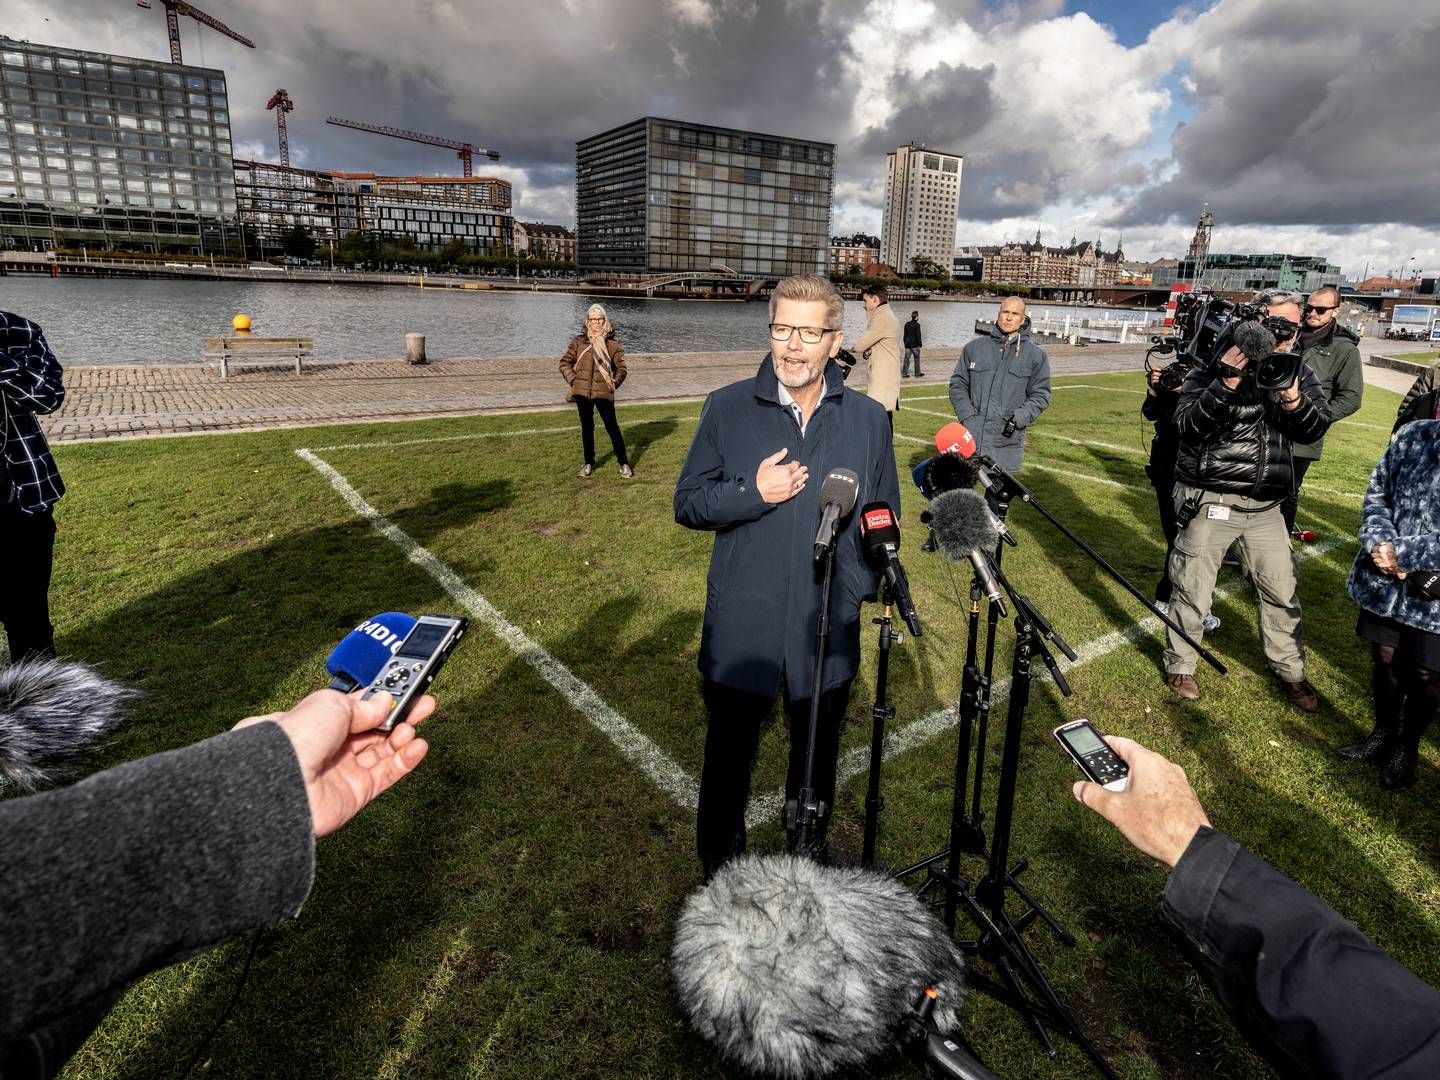 Kromann Reumert fik 3,2 mio. kr. for at undersøge tidligere overborgmester i København Frank Jensen (S). Han måtte trække sig fra posten i efteråret 2020 på grund af krænkende adfærd. | Foto: Henning Hjorth